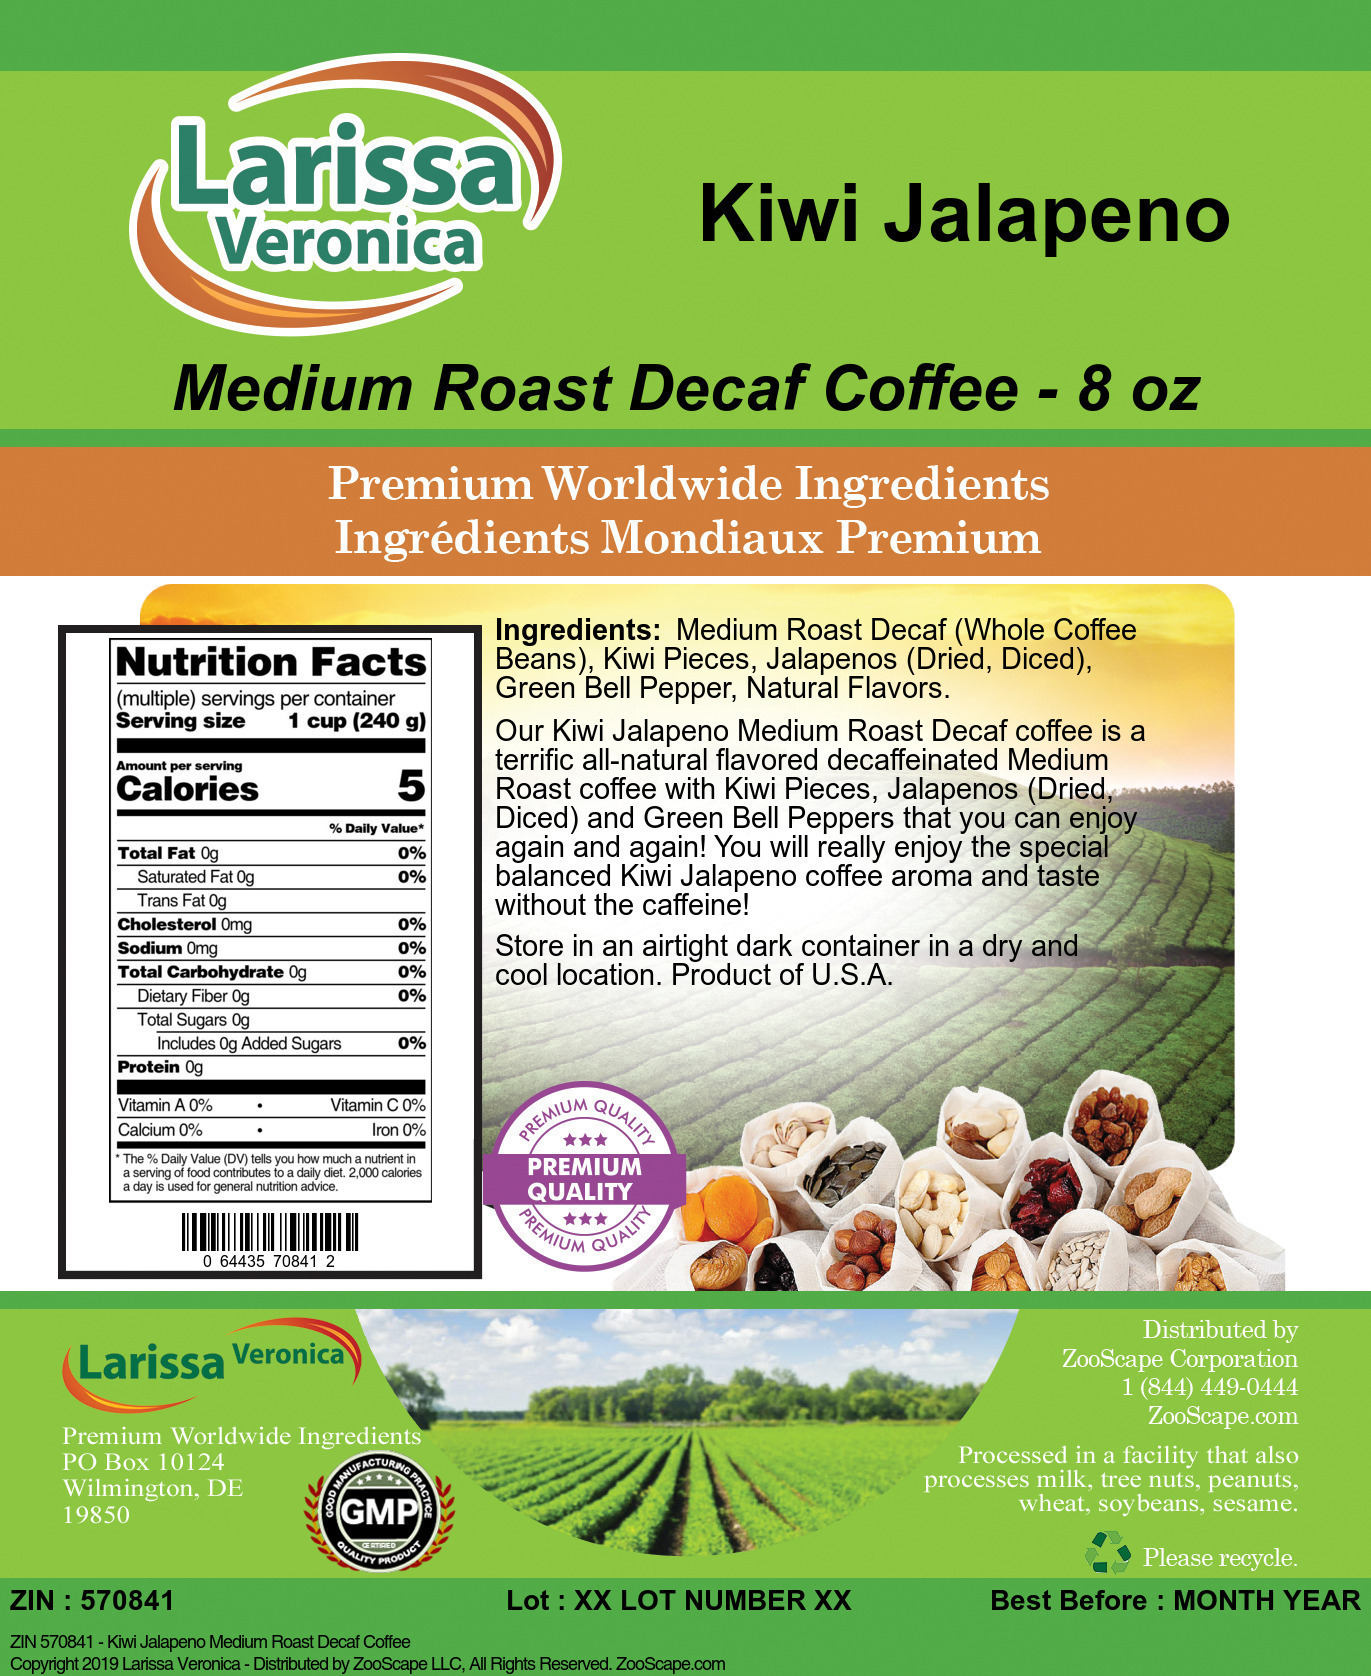 Kiwi Jalapeno Medium Roast Decaf Coffee - Label